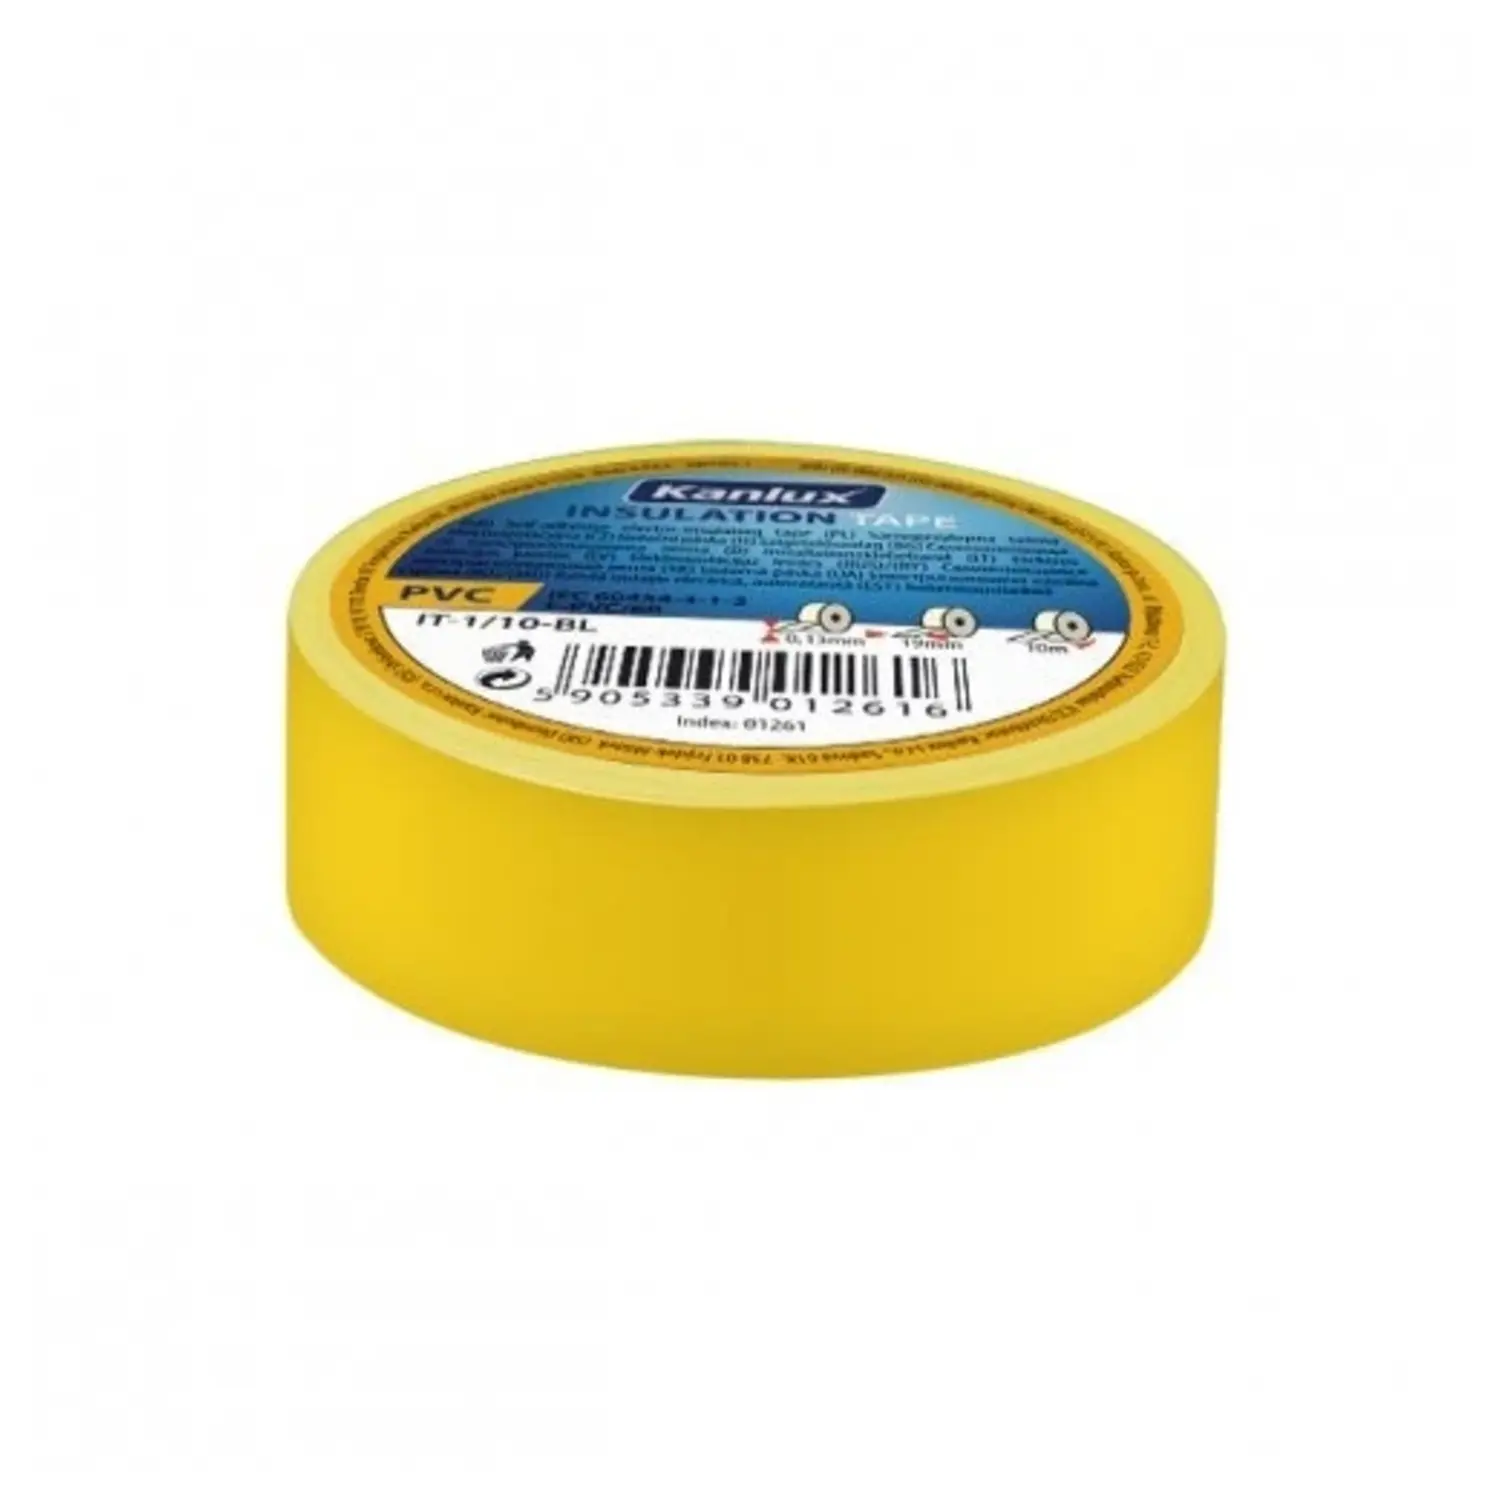 immagine del prodotto rotolo nastro isolante per elettricista 19 mm giallo CE kan 01272